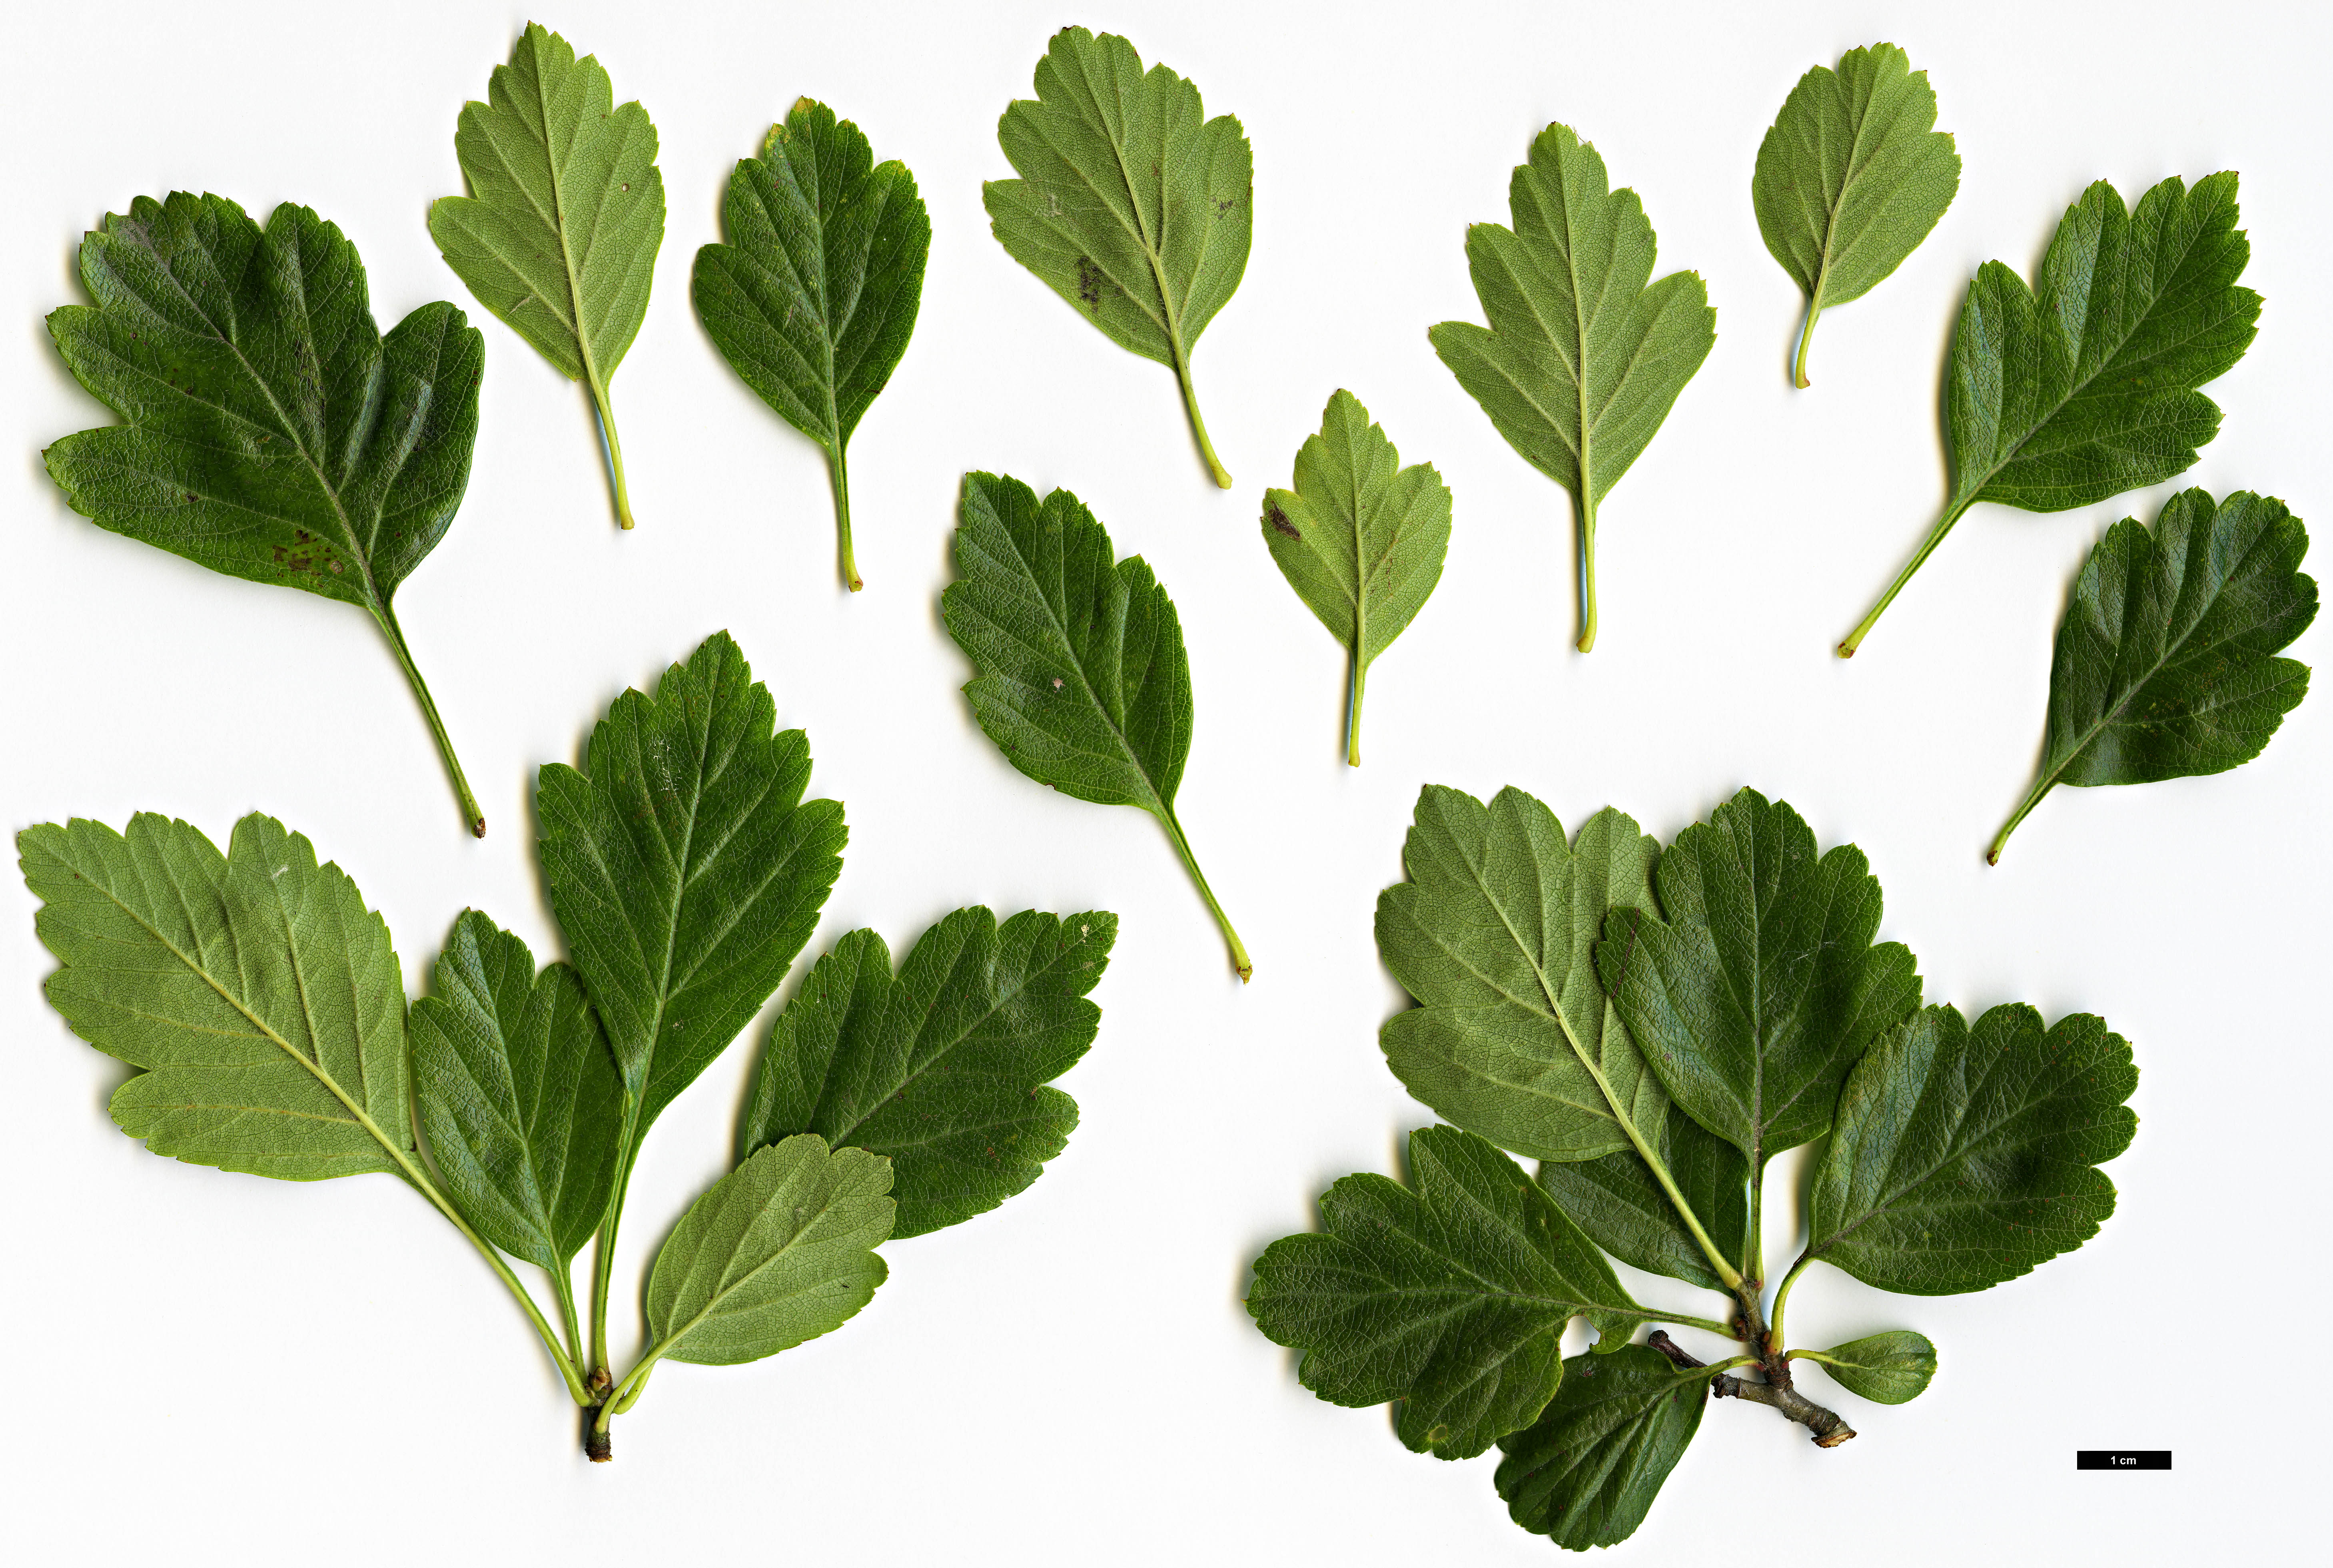 High resolution image: Family: Rosaceae - Genus: Crataegus - Taxon: sorbifolia